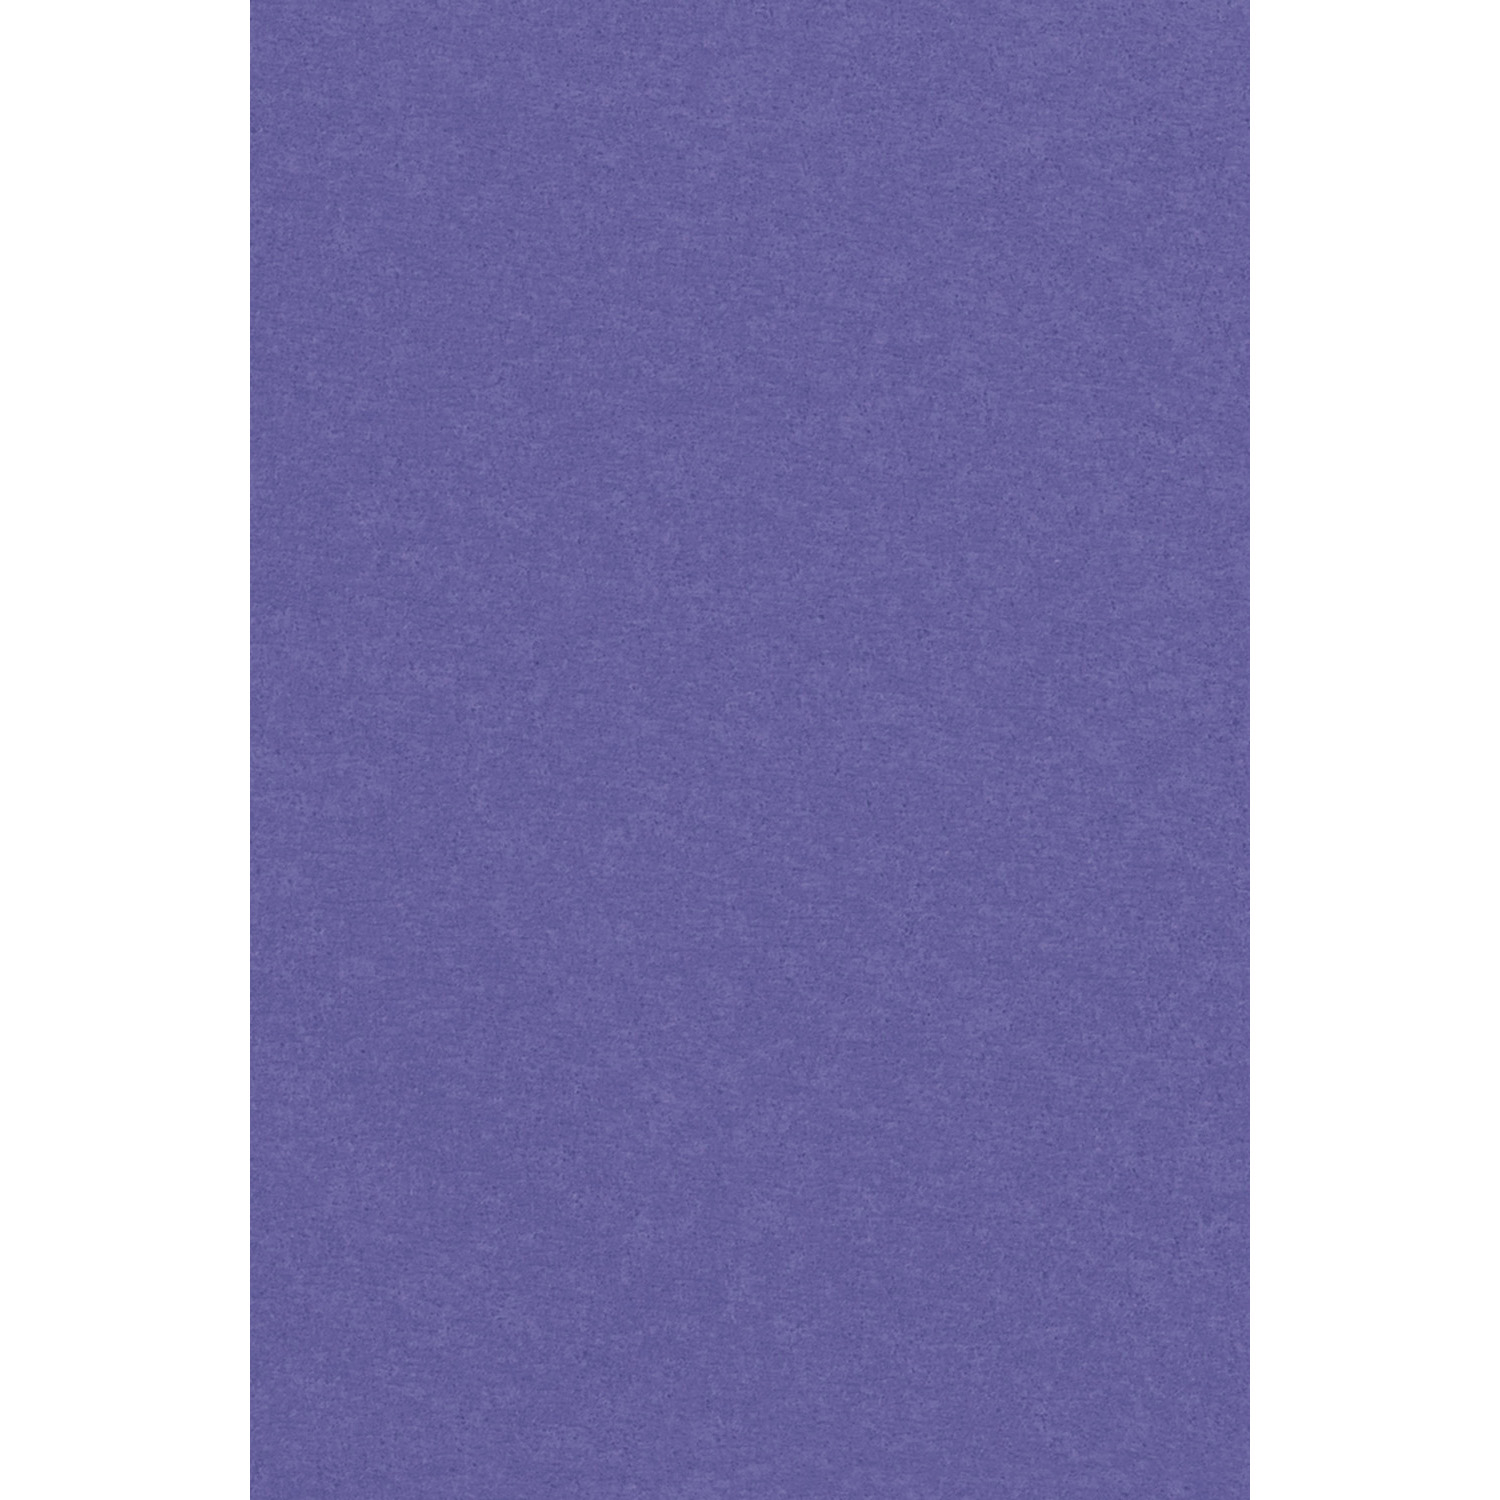 Ubrus fialový 137 cm x 274 cm